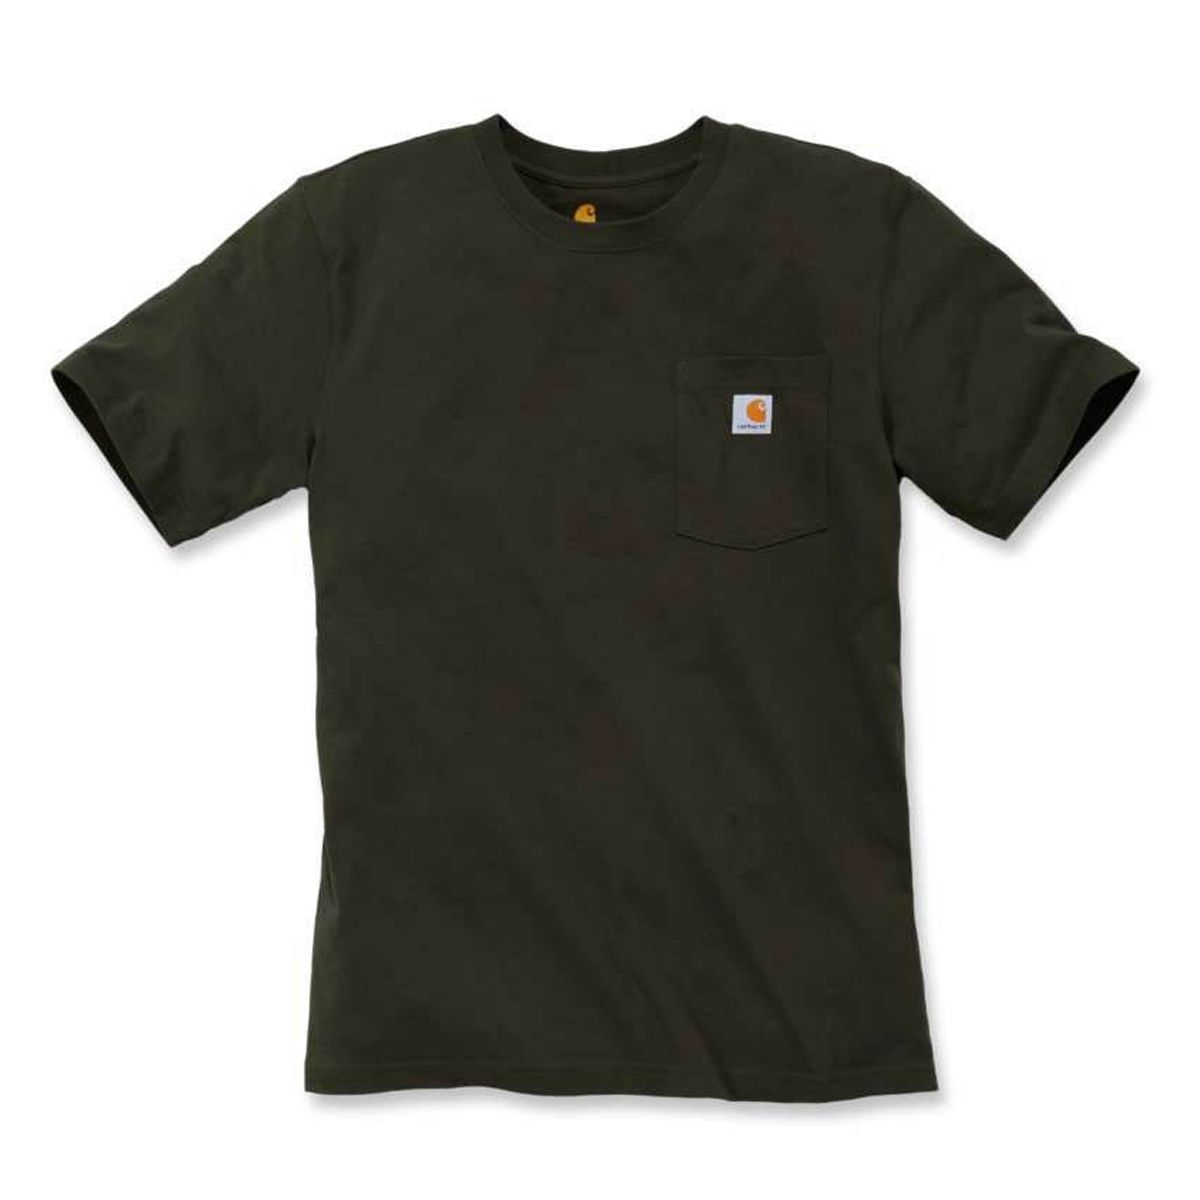 Carhartt 103296 Relaxed Fit Heavyweight Short Sleeve K87 Pocket T-Shirt